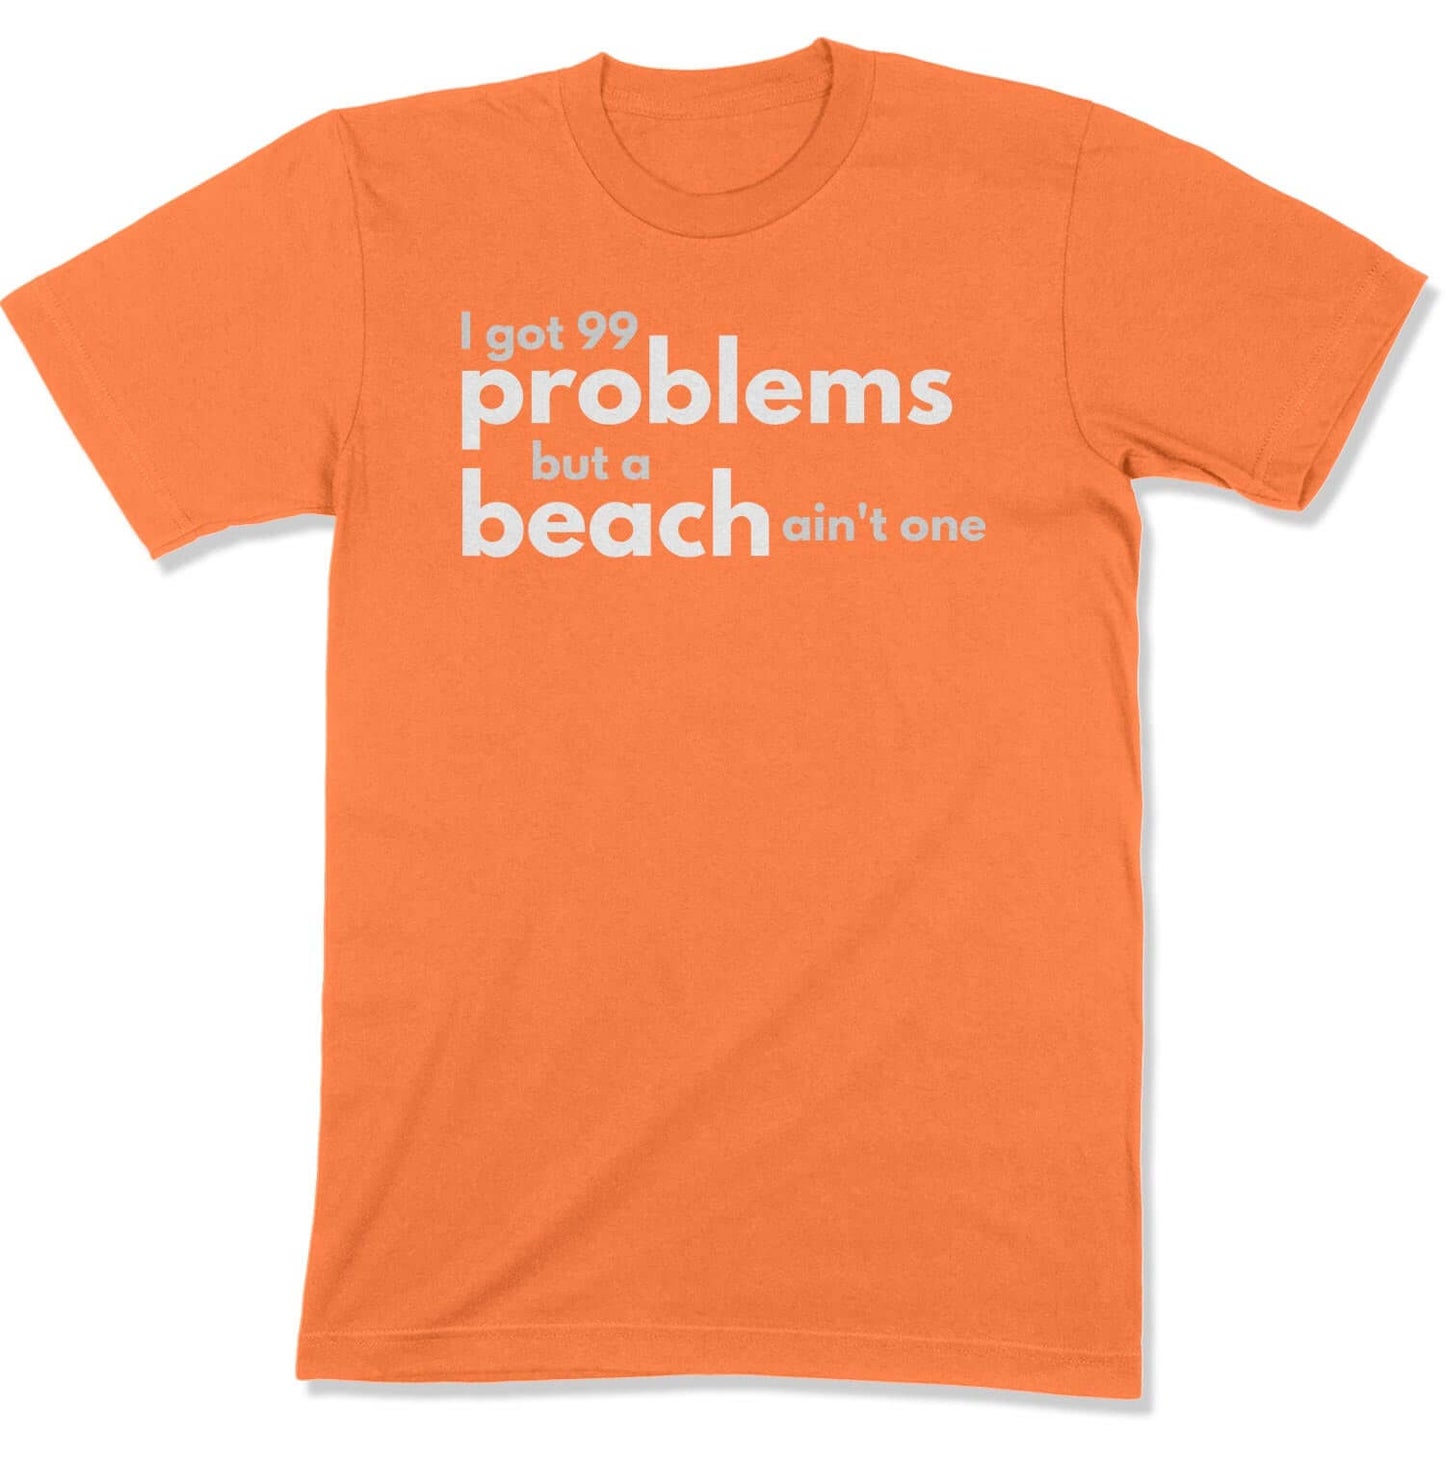 99 Problems Unisex T-Shirt in Color: Burnt Orange - East Coast AF Apparel